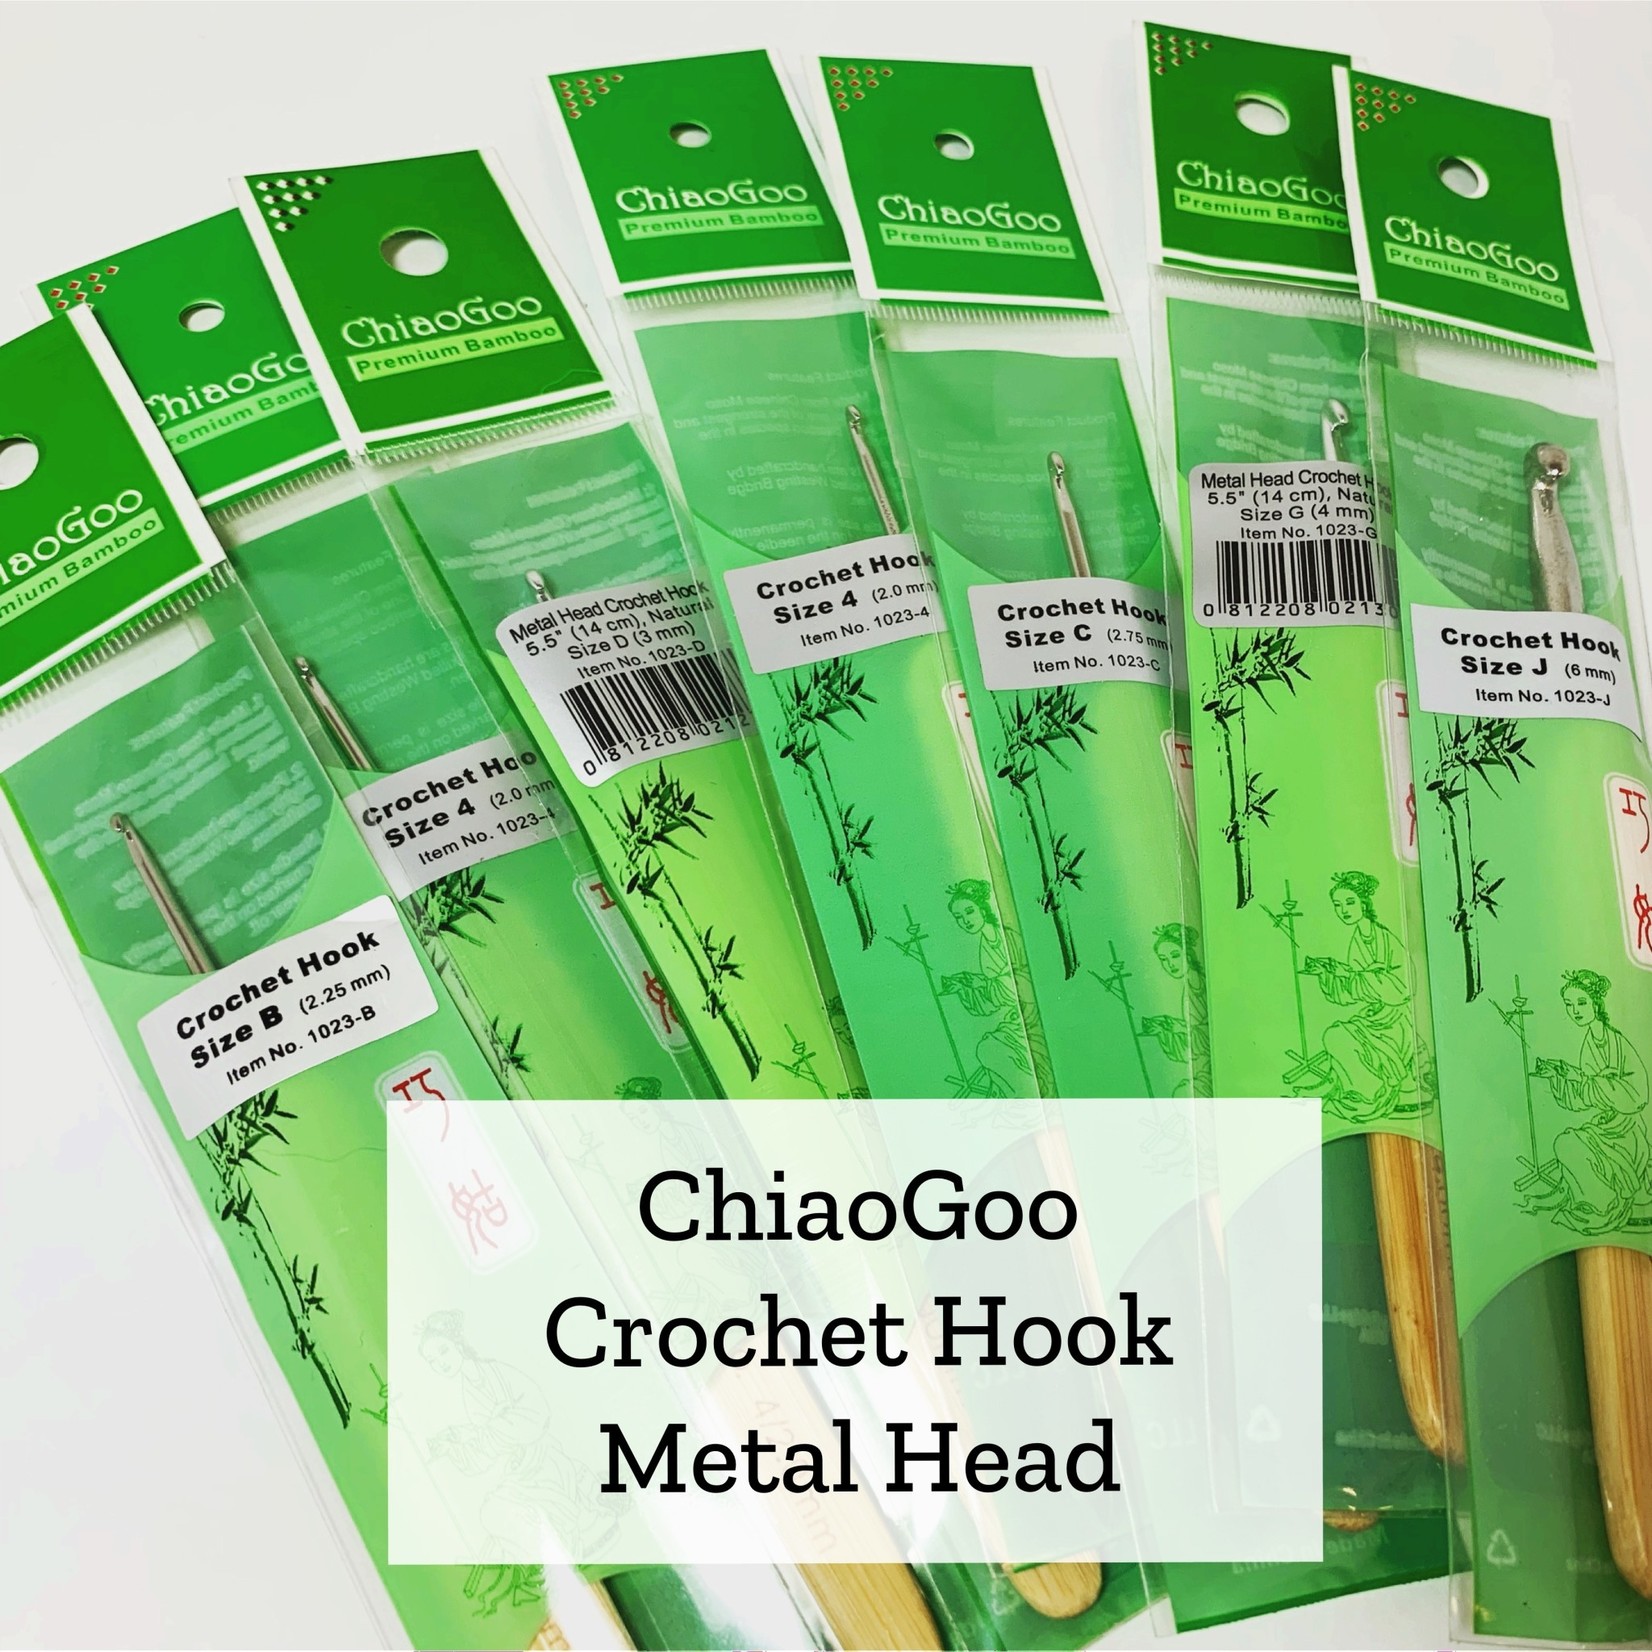 ChiaoGoo Metal Head Crochet Hook - 6 mm